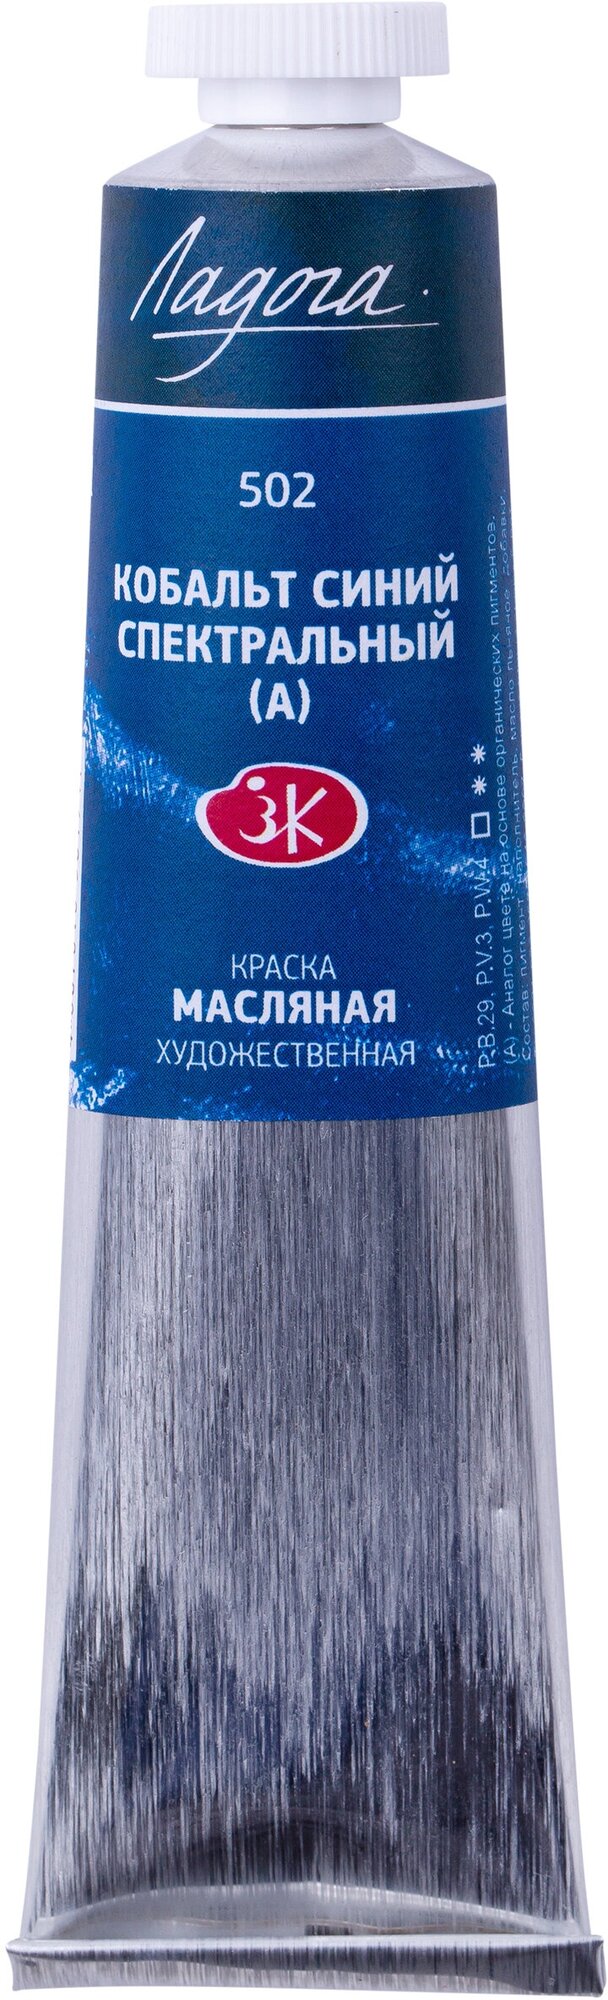 Краска Масляная "Ладога" 46 мл. Кобальт синий спектральный (А)